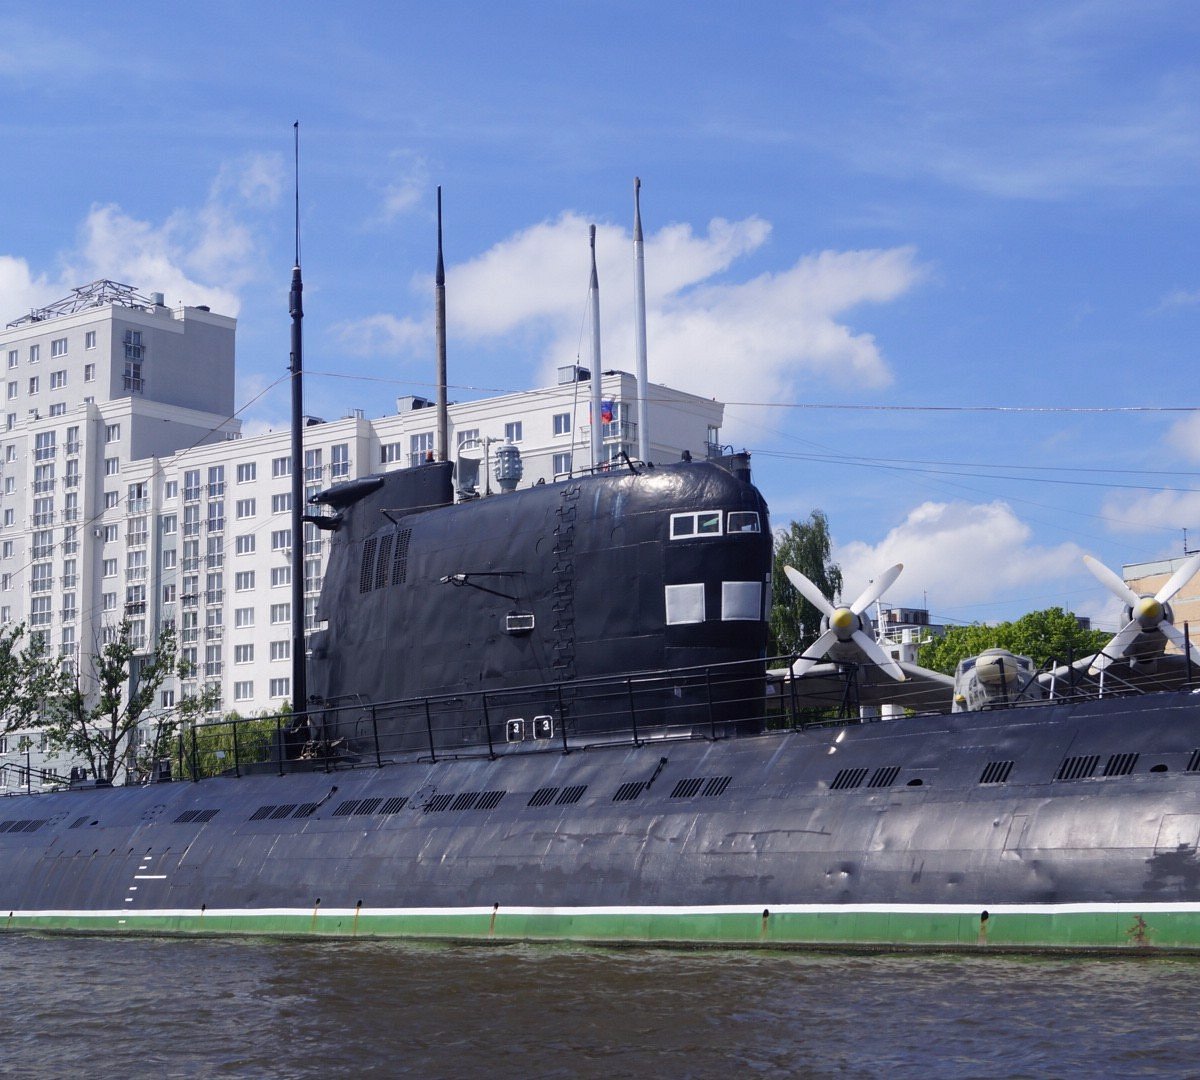 b-413-submarine-museum-caliningrado-atualizado-2022-o-que-saber